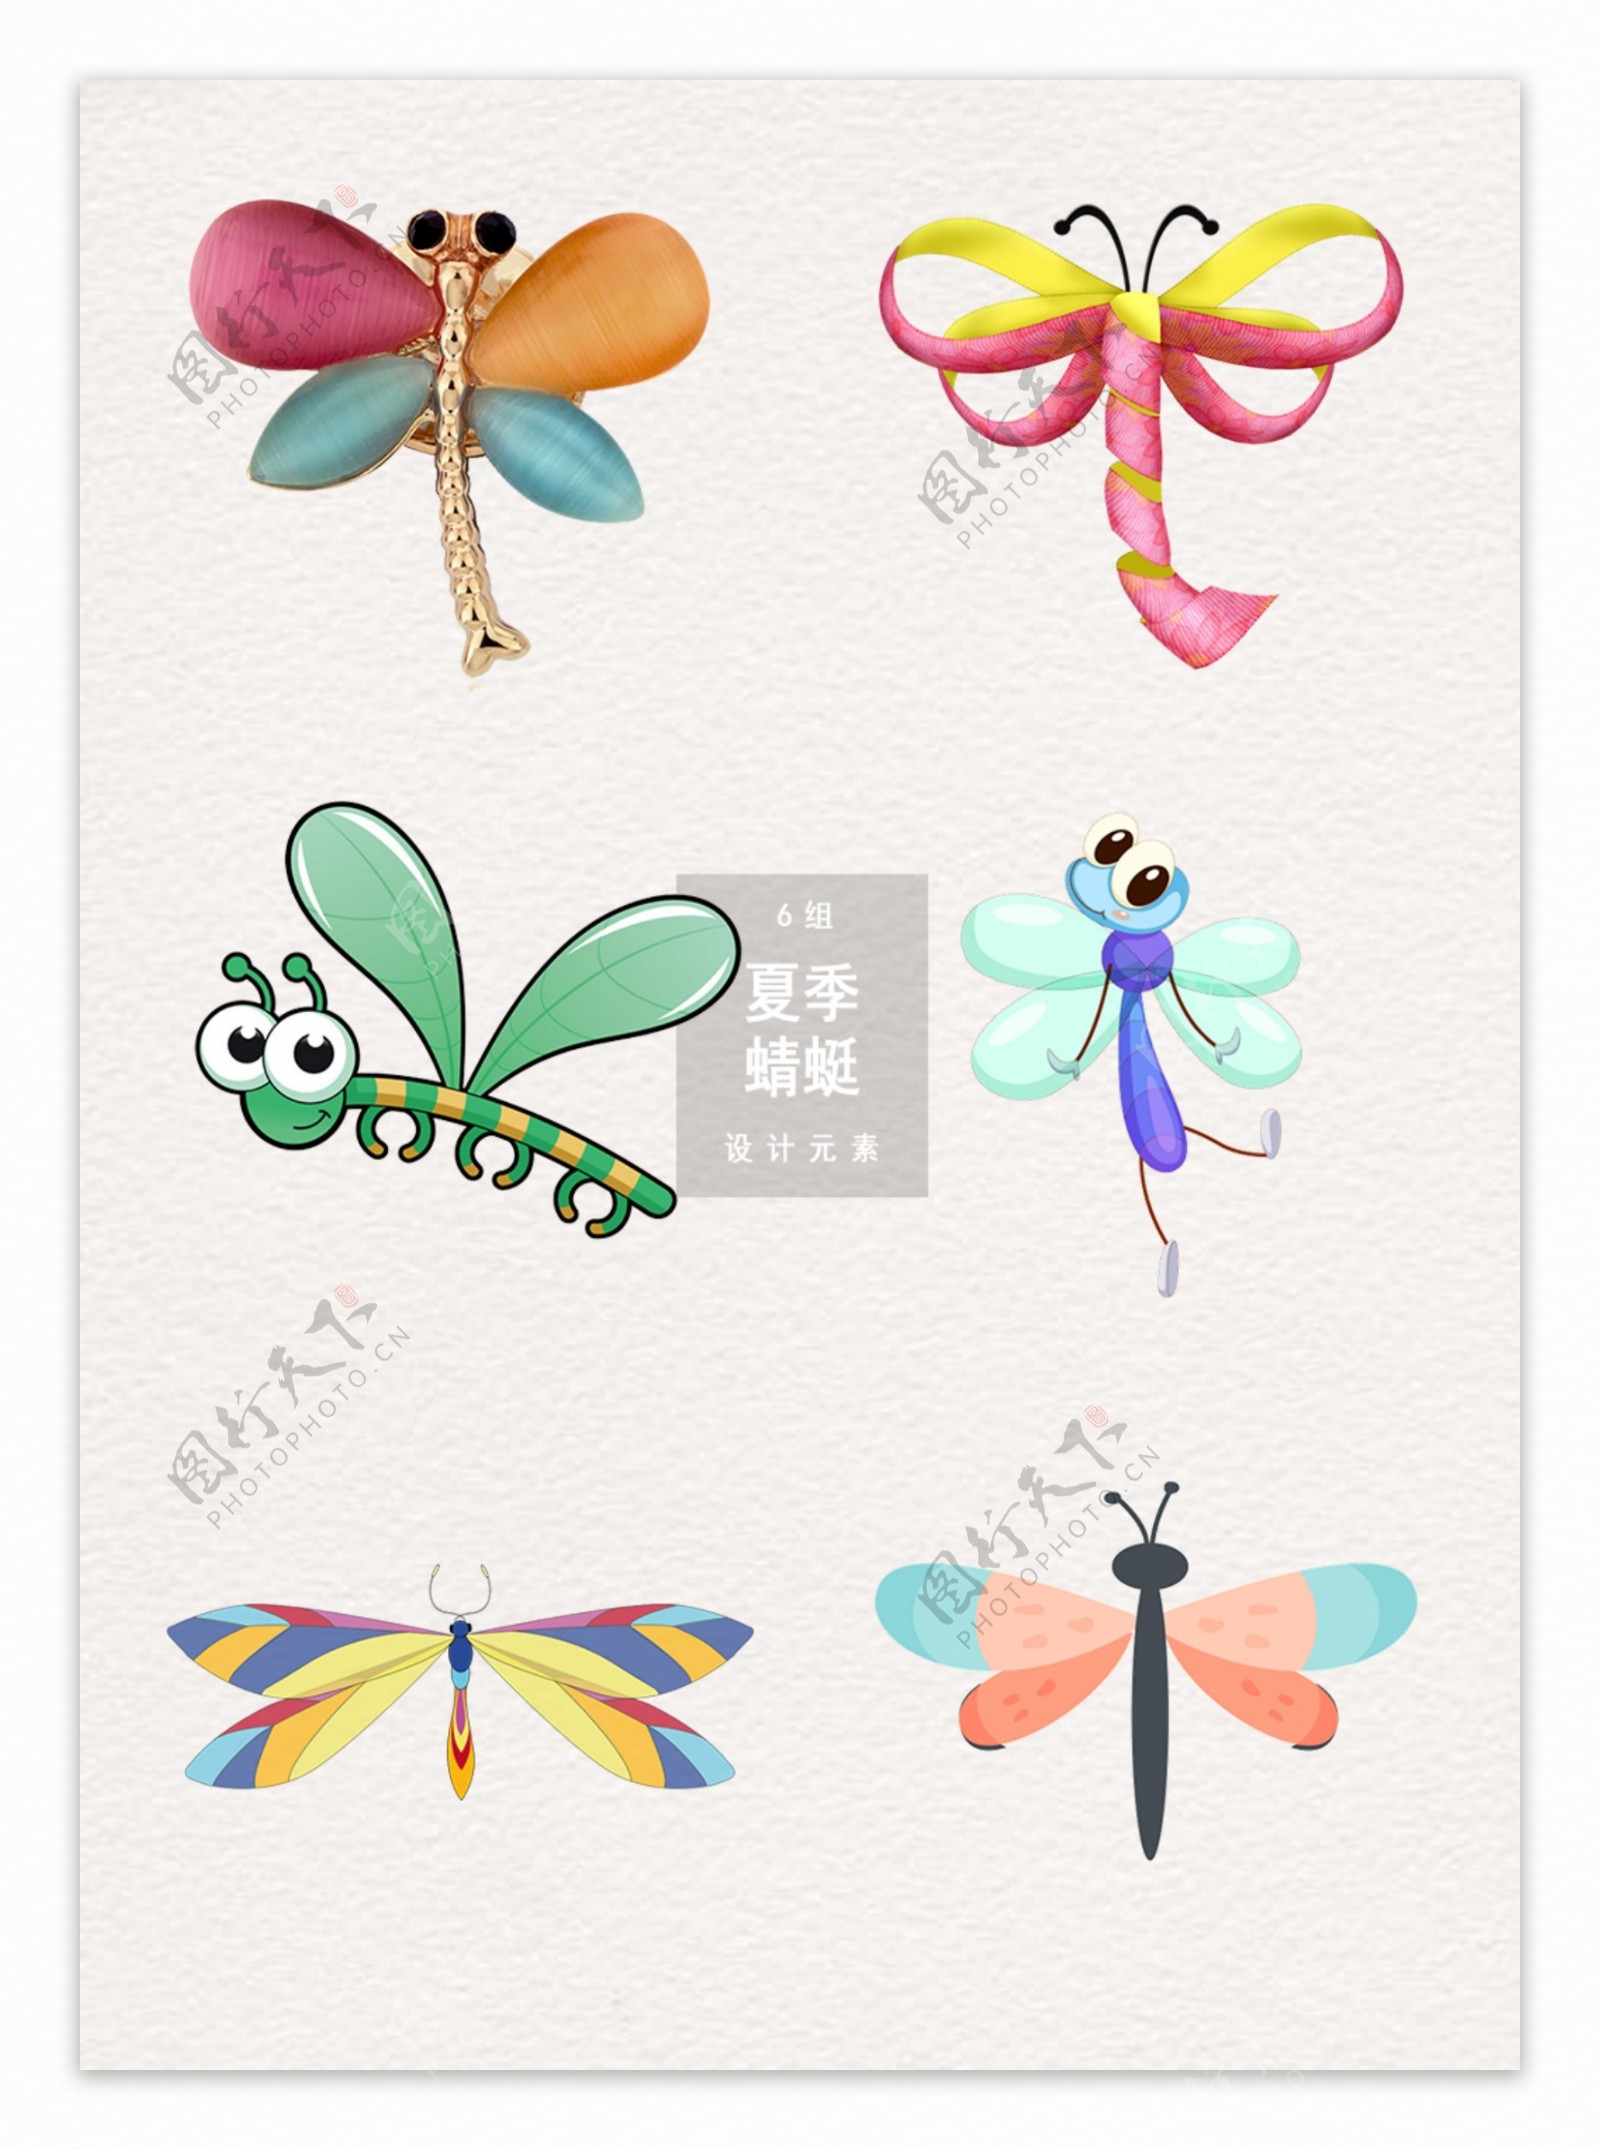 可爱卡通夏季蜻蜓设计素材